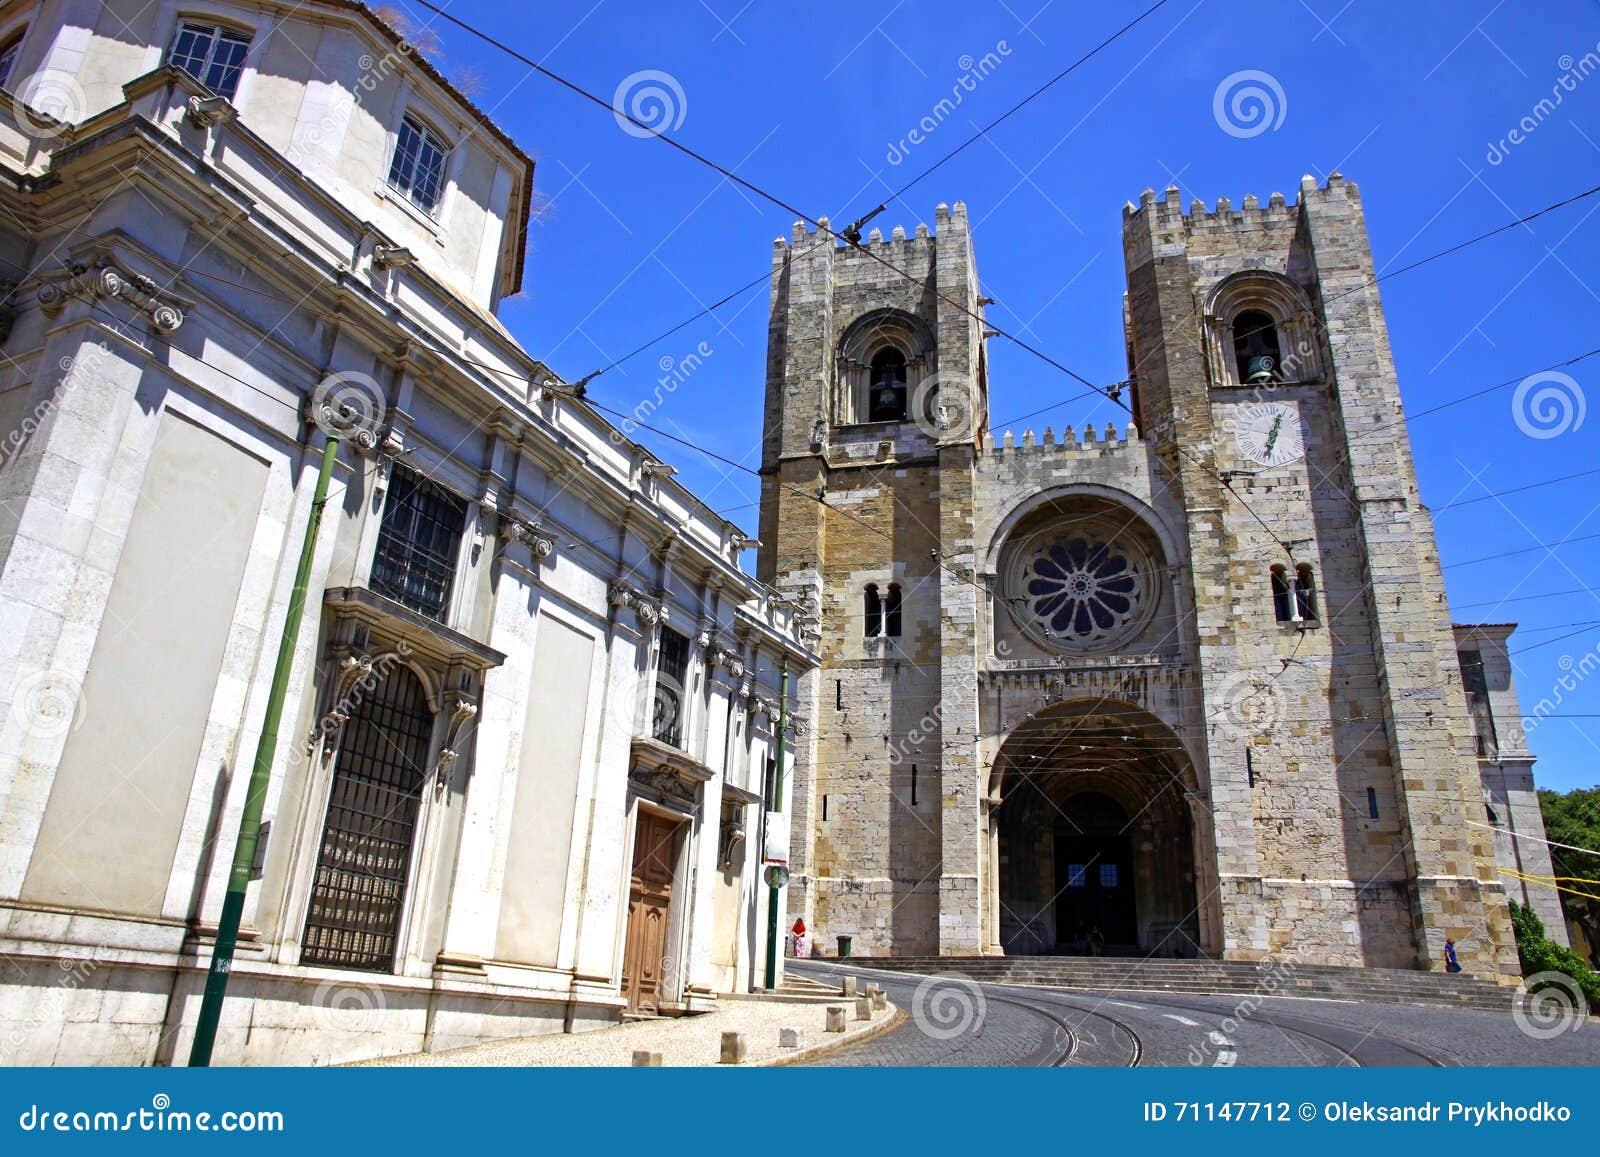 歐洲葡萄牙南部阿爾加維東部阿爾加維老城的聖洛倫索教堂igreja De Sao Lourenco 歐洲葡萄牙阿爾加維阿爾曼西爾教堂 照片背景圖 ...